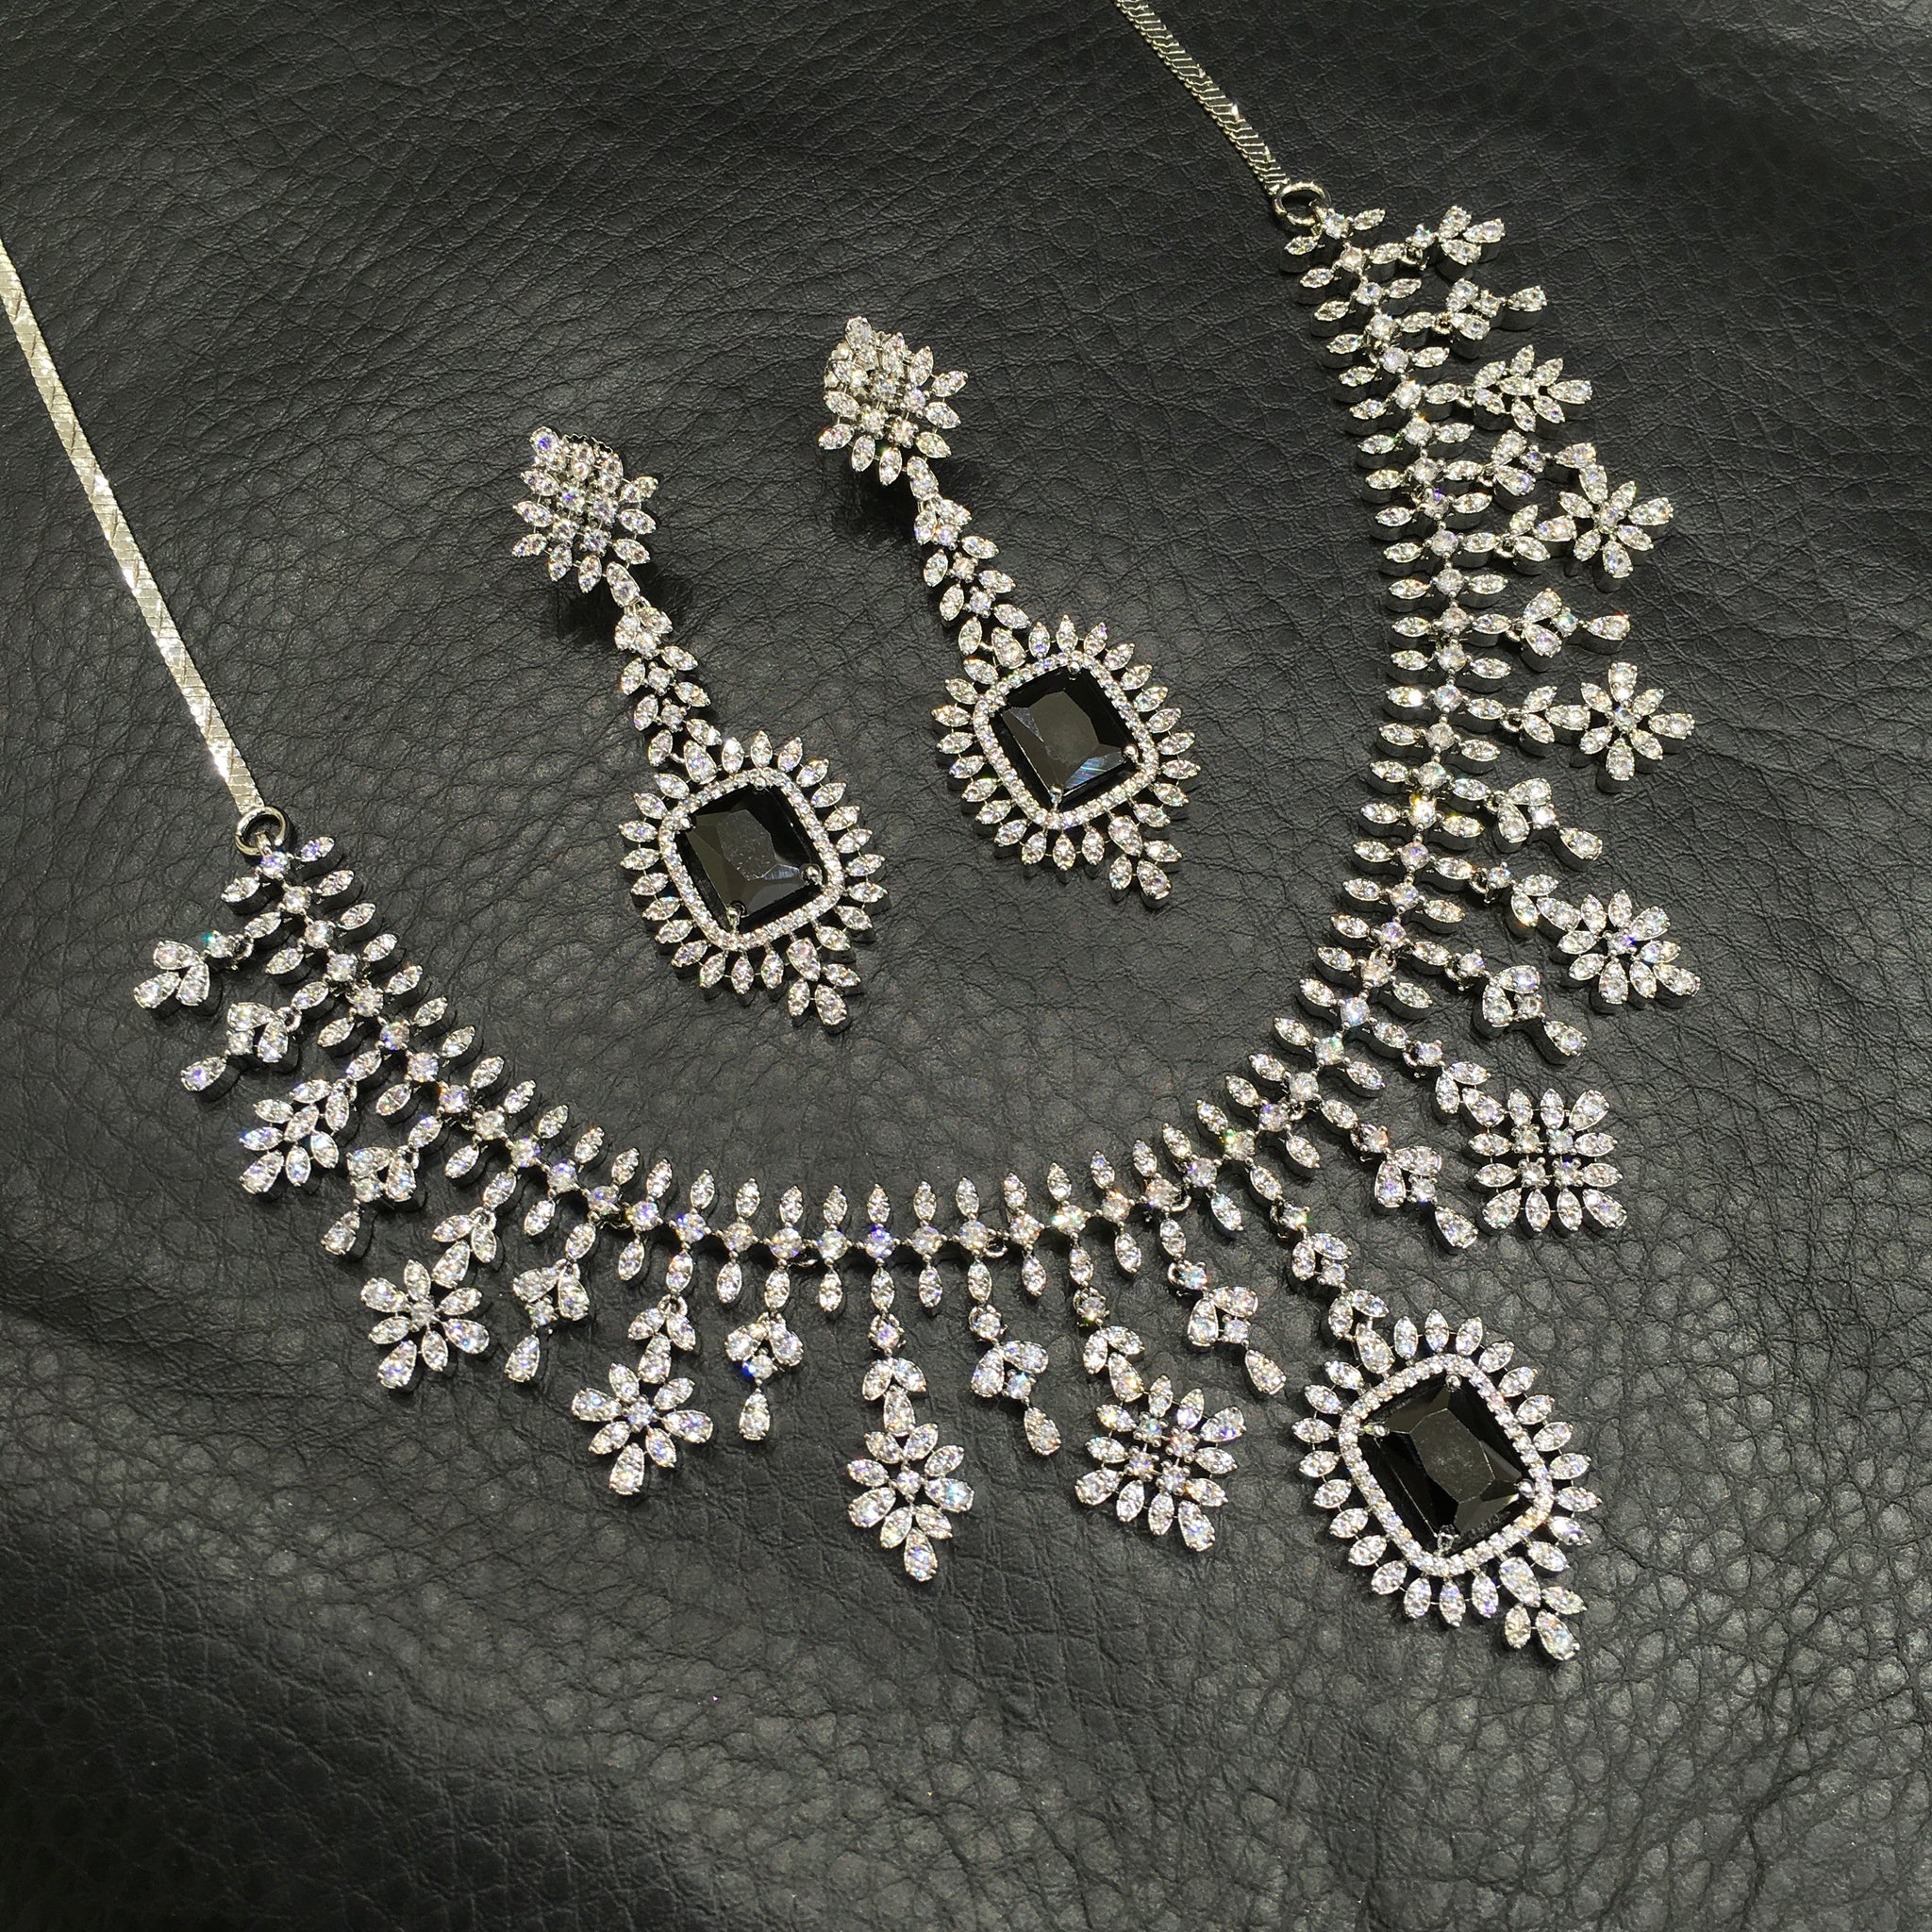 Round Neck Zircon/AD Necklace Set 4131-69 - Dazzles Jewellery